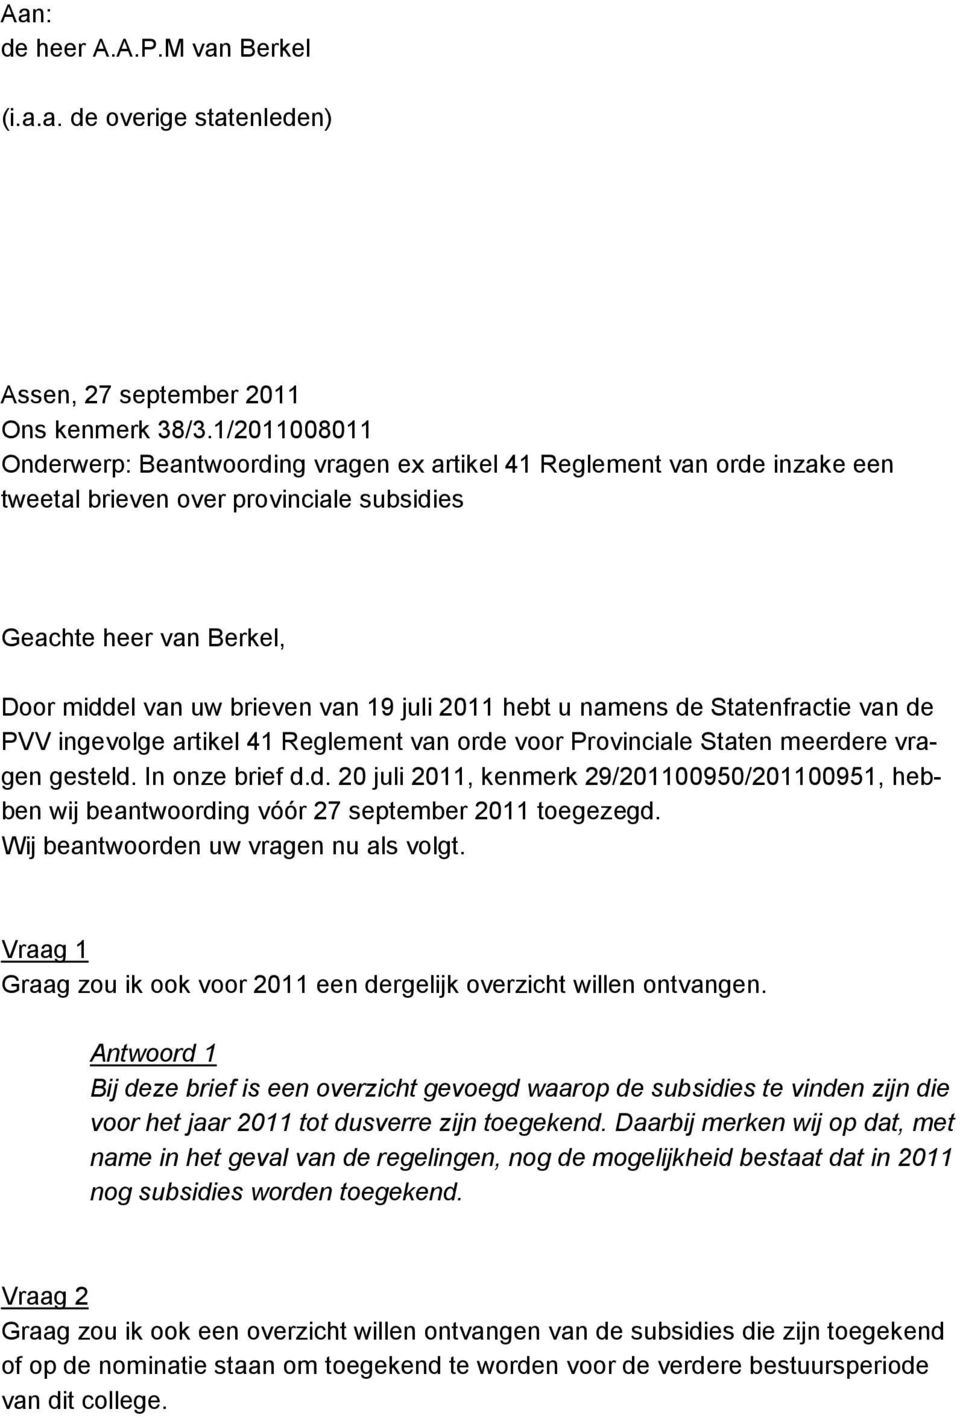 2011 hebt u namens de Statenfractie van de PVV ingevolge artikel 41 Reglement van orde voor Provinciale Staten meerdere vragen gesteld. In onze brief d.d. 20 juli 2011, kenmerk 29/201100950/201100951, hebben wij beantwoording vóór 27 september 2011 toegezegd.